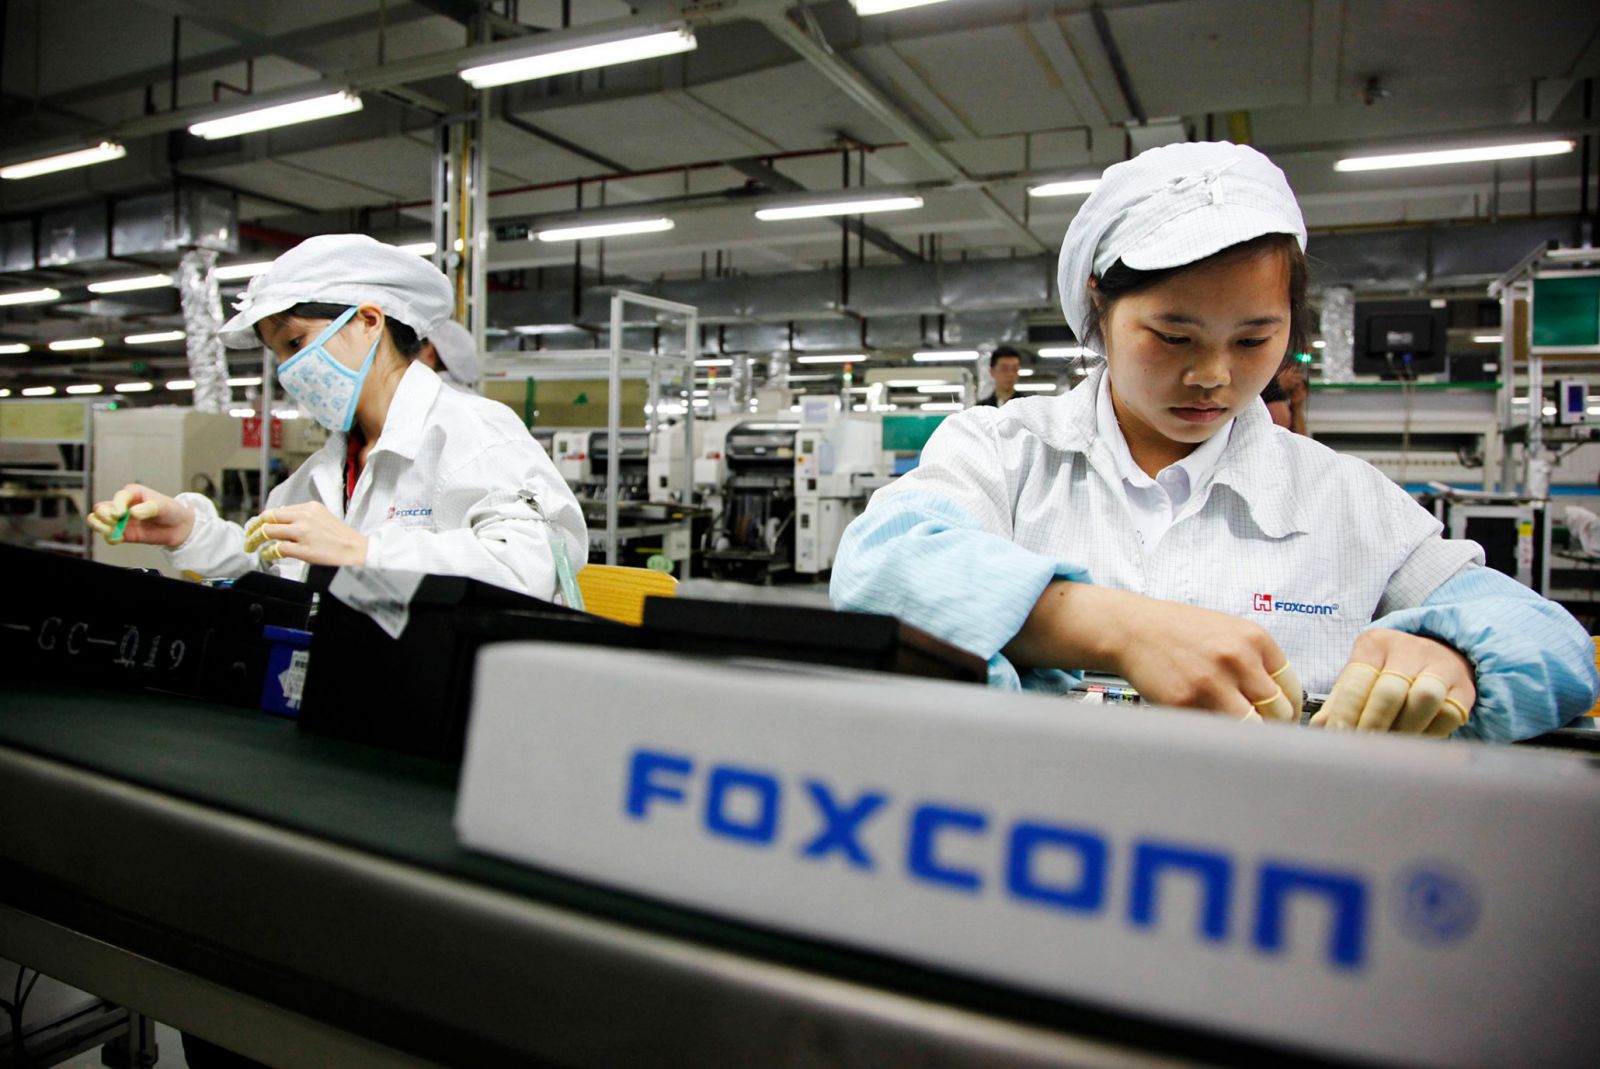 Trước đó, Foxconn nhà sản xuất linh kiện điện tử lớn nhất của Apple đã lên tiếng về kế hoạch mở rộng tại Việt Nam.